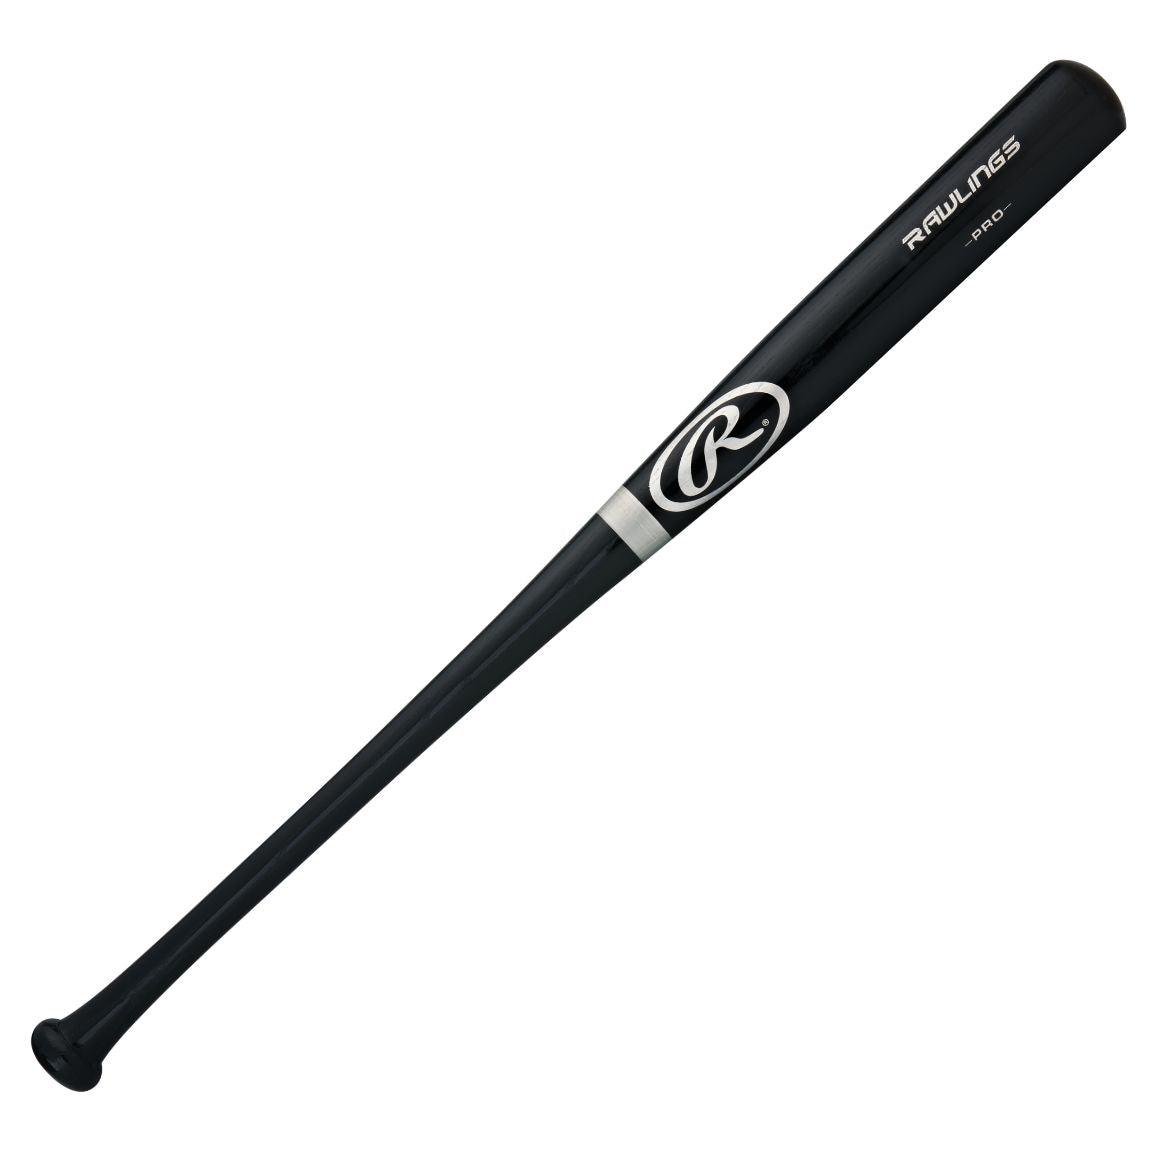 Adirondak 212 Wood Ash Bat - Sports Excellence